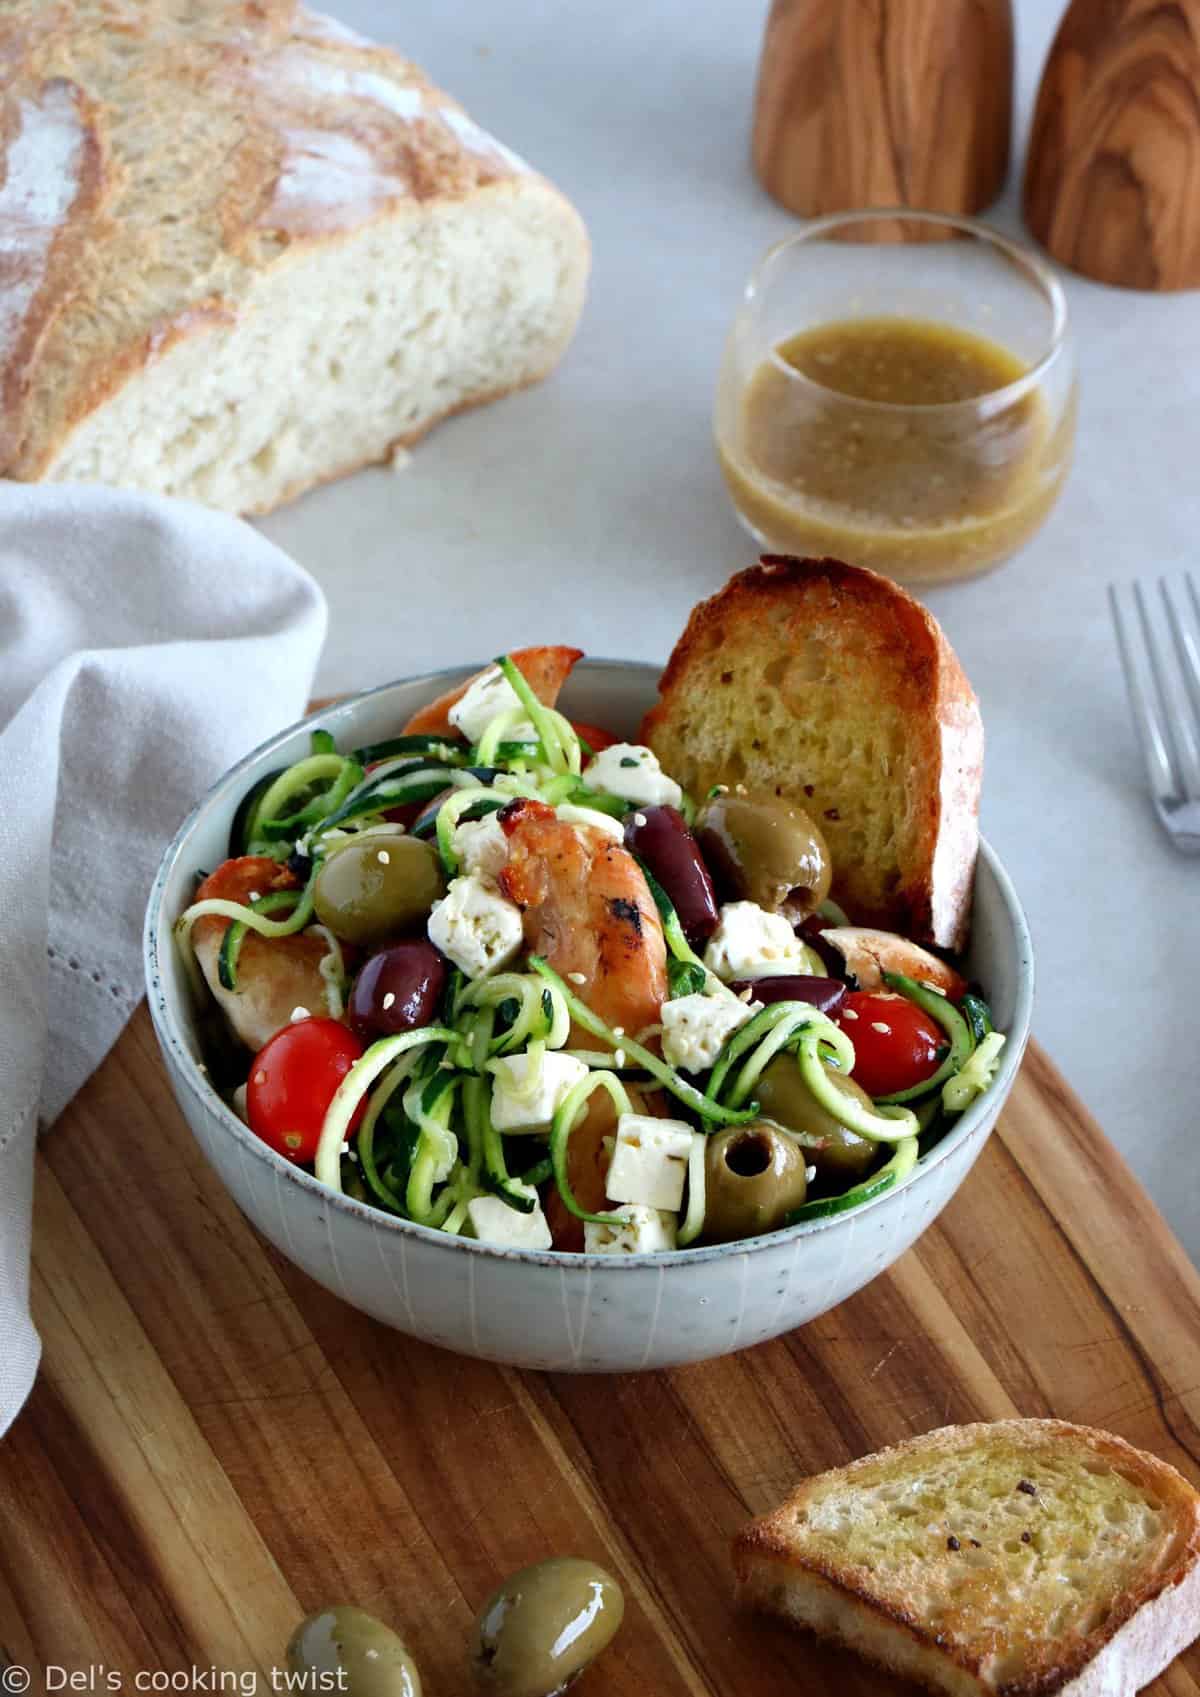 L'été s'invite dans notre assiette avec cette salade grecque de poulet aux spaghettis de courgettes et à la feta. Réalisée avec des courgettes coupées sous forme de spaghettis (zoodles), cette salade tiède est savoureuse, équilibrée, et réalisée sans gluten. 